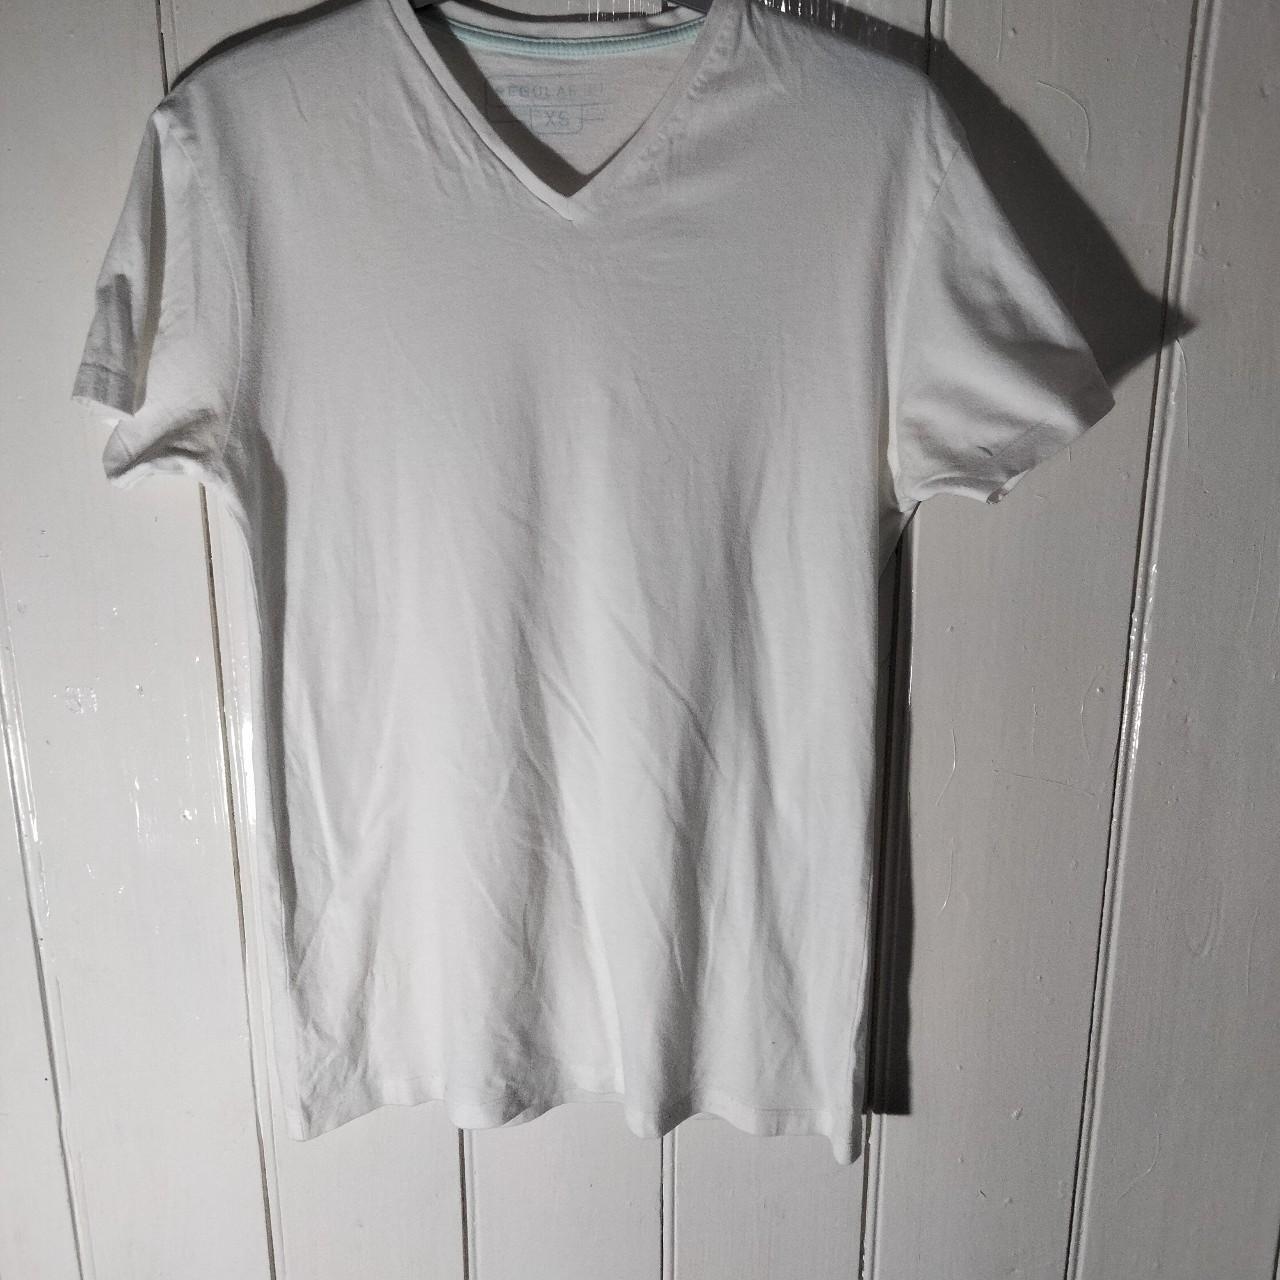 Unbranded Men's White T-shirt | Depop